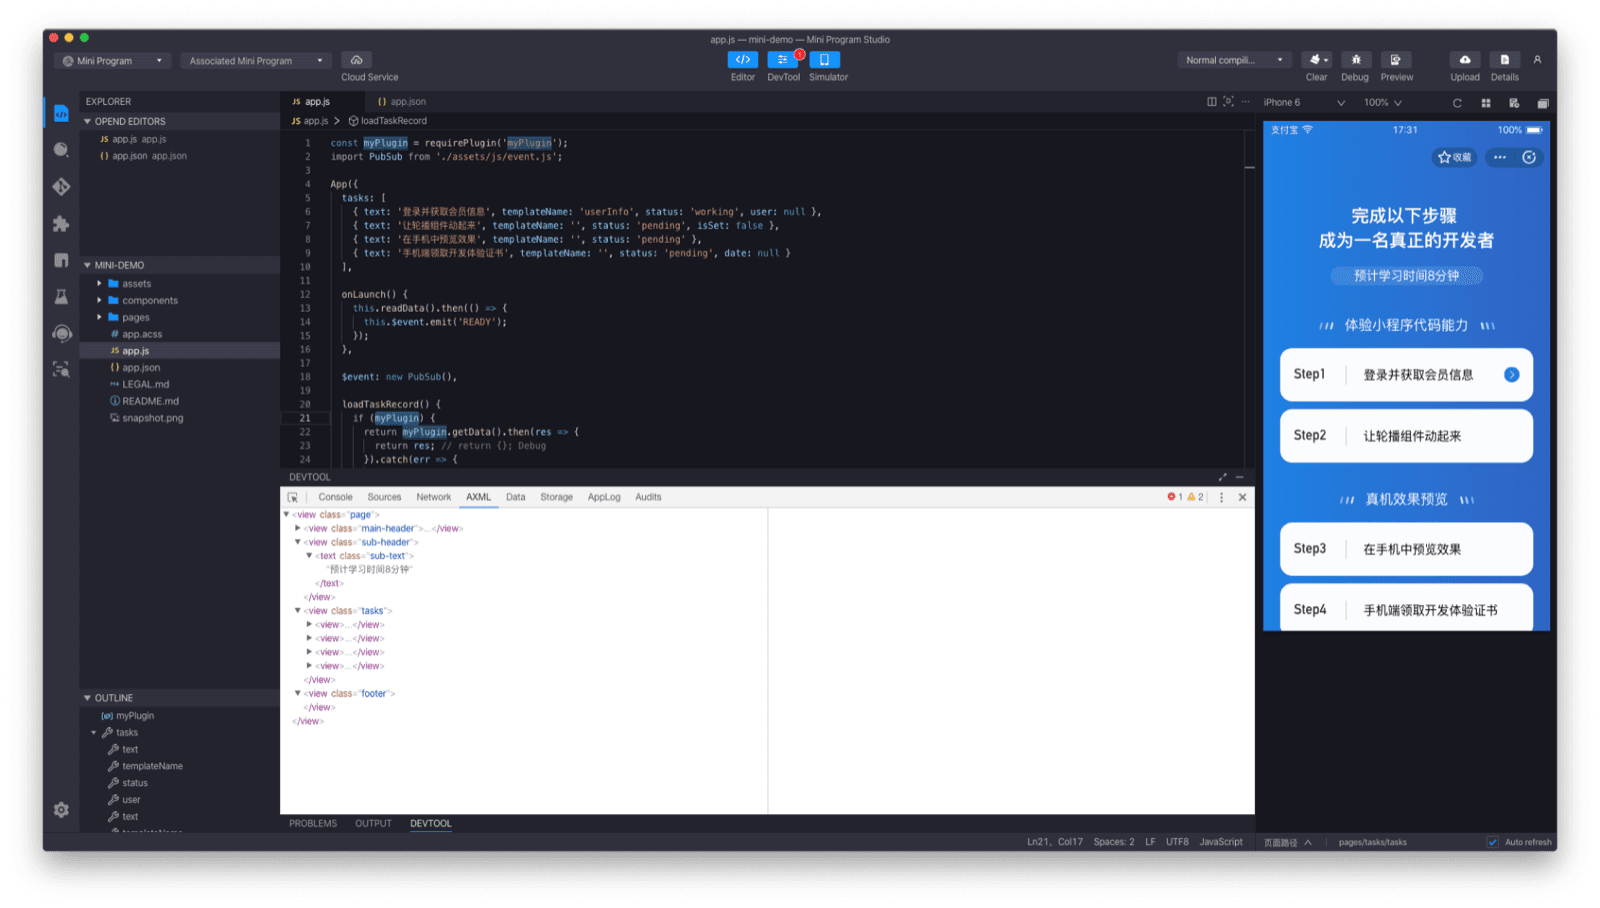 หน้าต่างแอปพลิเคชัน Alipay DevTools แสดงตัวแก้ไขโค้ด เครื่องมือจำลอง และโปรแกรมแก้ไขข้อบกพร่อง